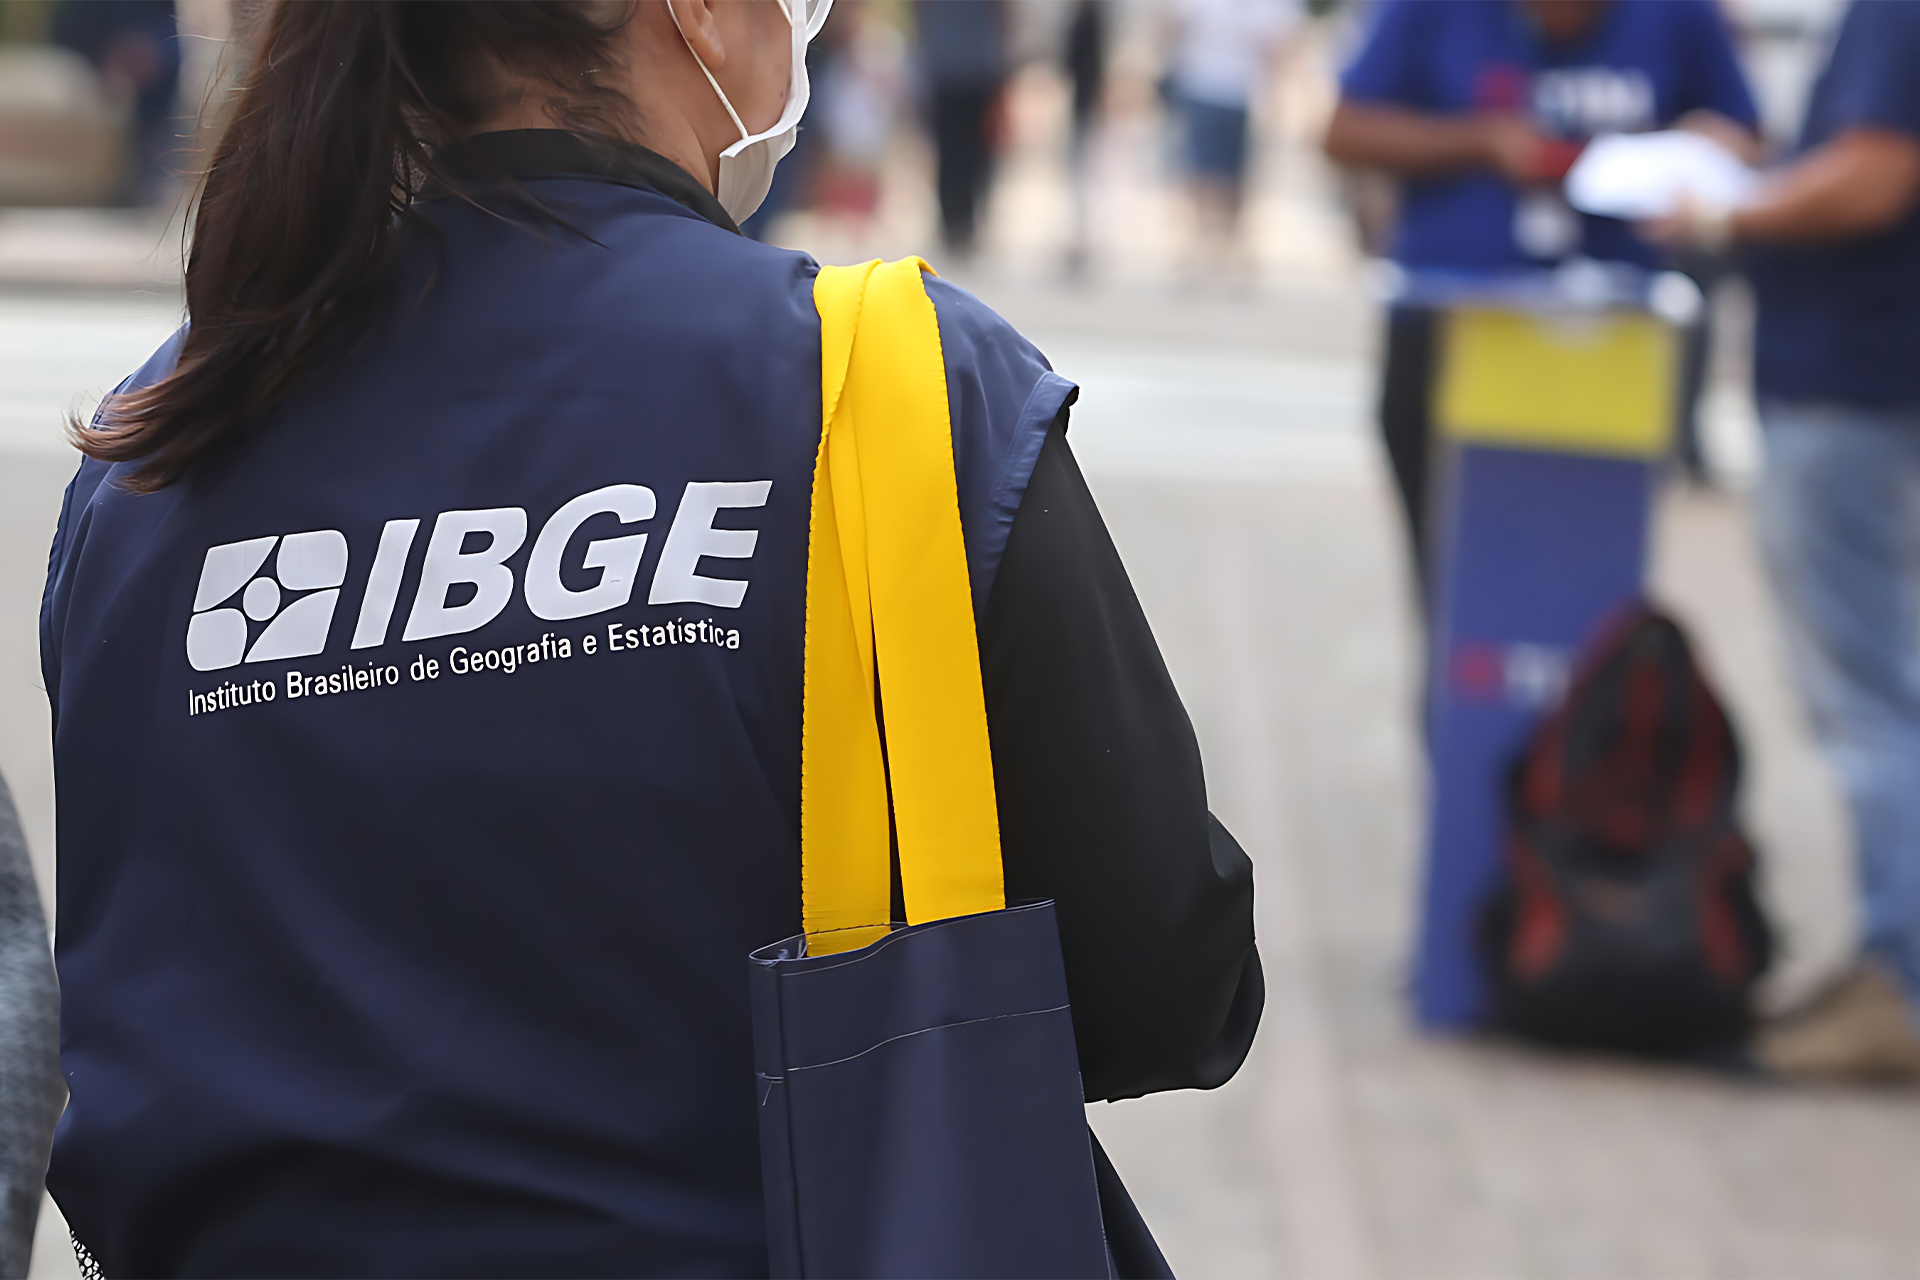 IBGE abre 316 vagas de estágio em todo o país com bolsa-auxílio de até R$ 1.125,69 para jornada de 30 horas semanais